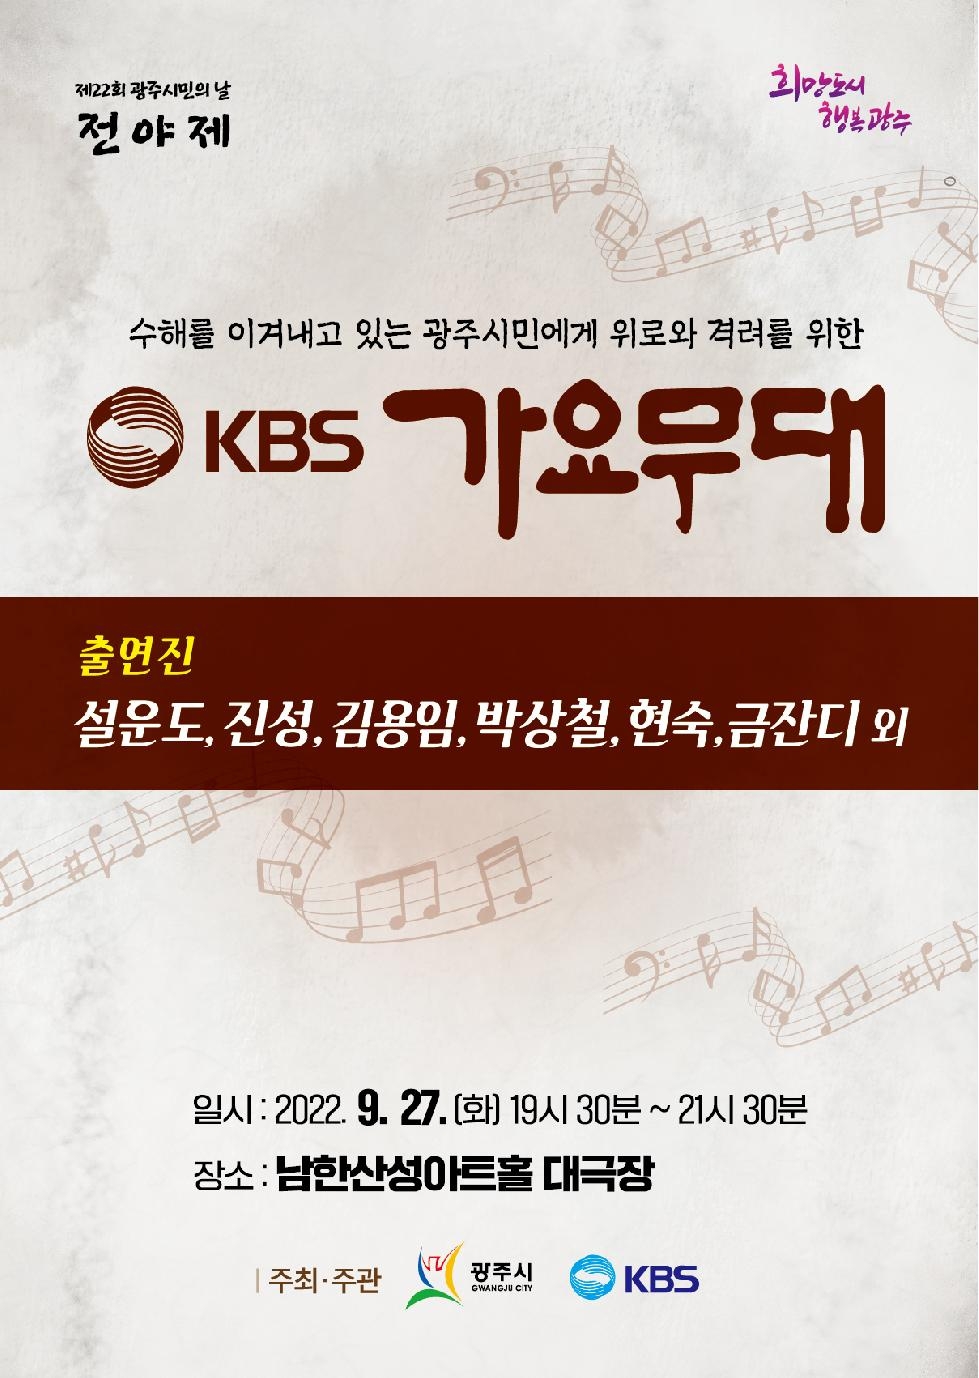 광주시, KBS 가요무대 개최